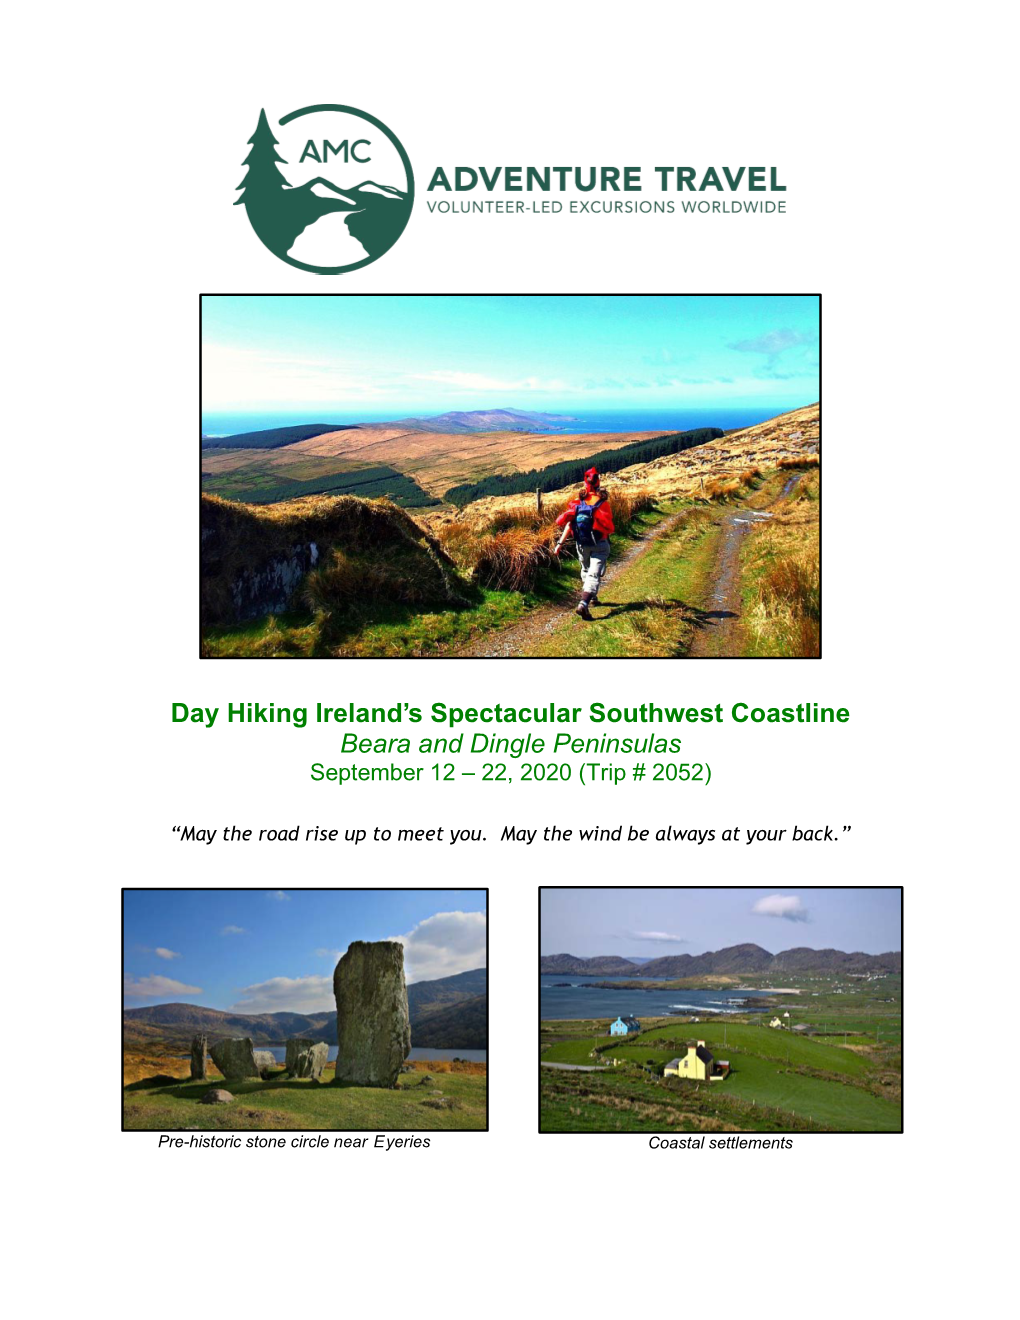 Day Hiking Ireland's Spectacular Southwest Coastline Beara and Dingle Peninsulas